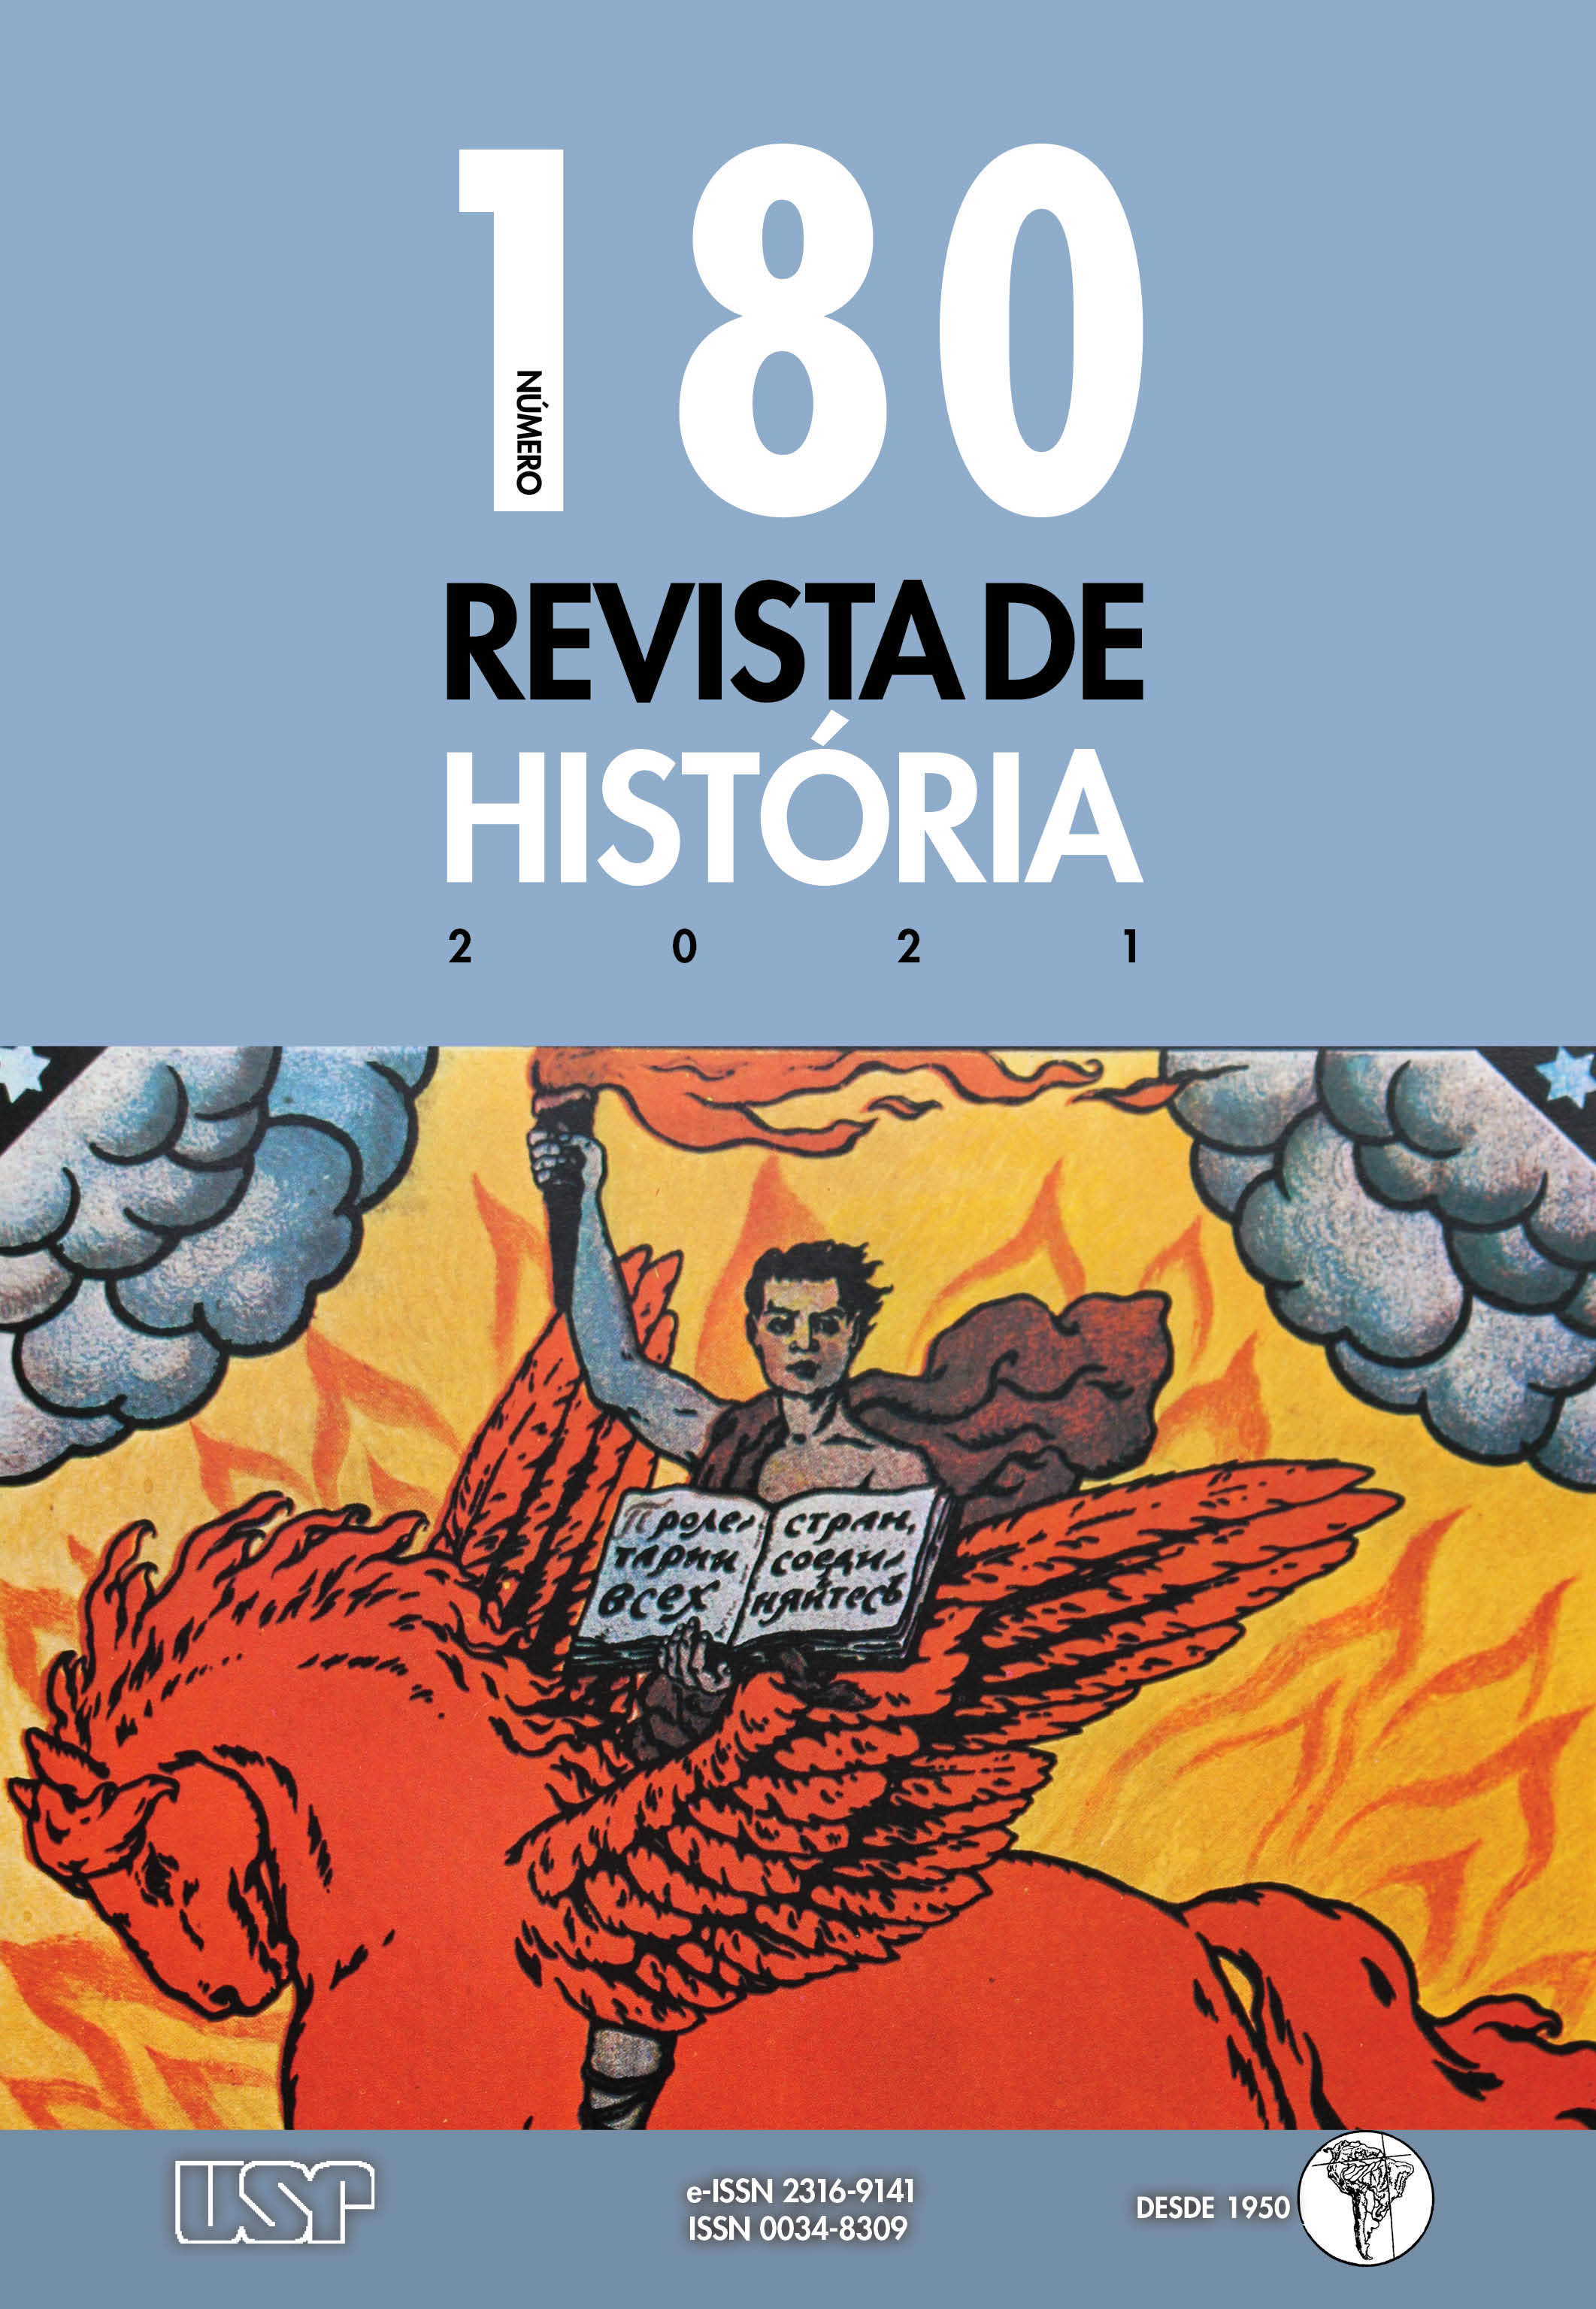 História da Historiografia 11 by História Historiografia - Issuu